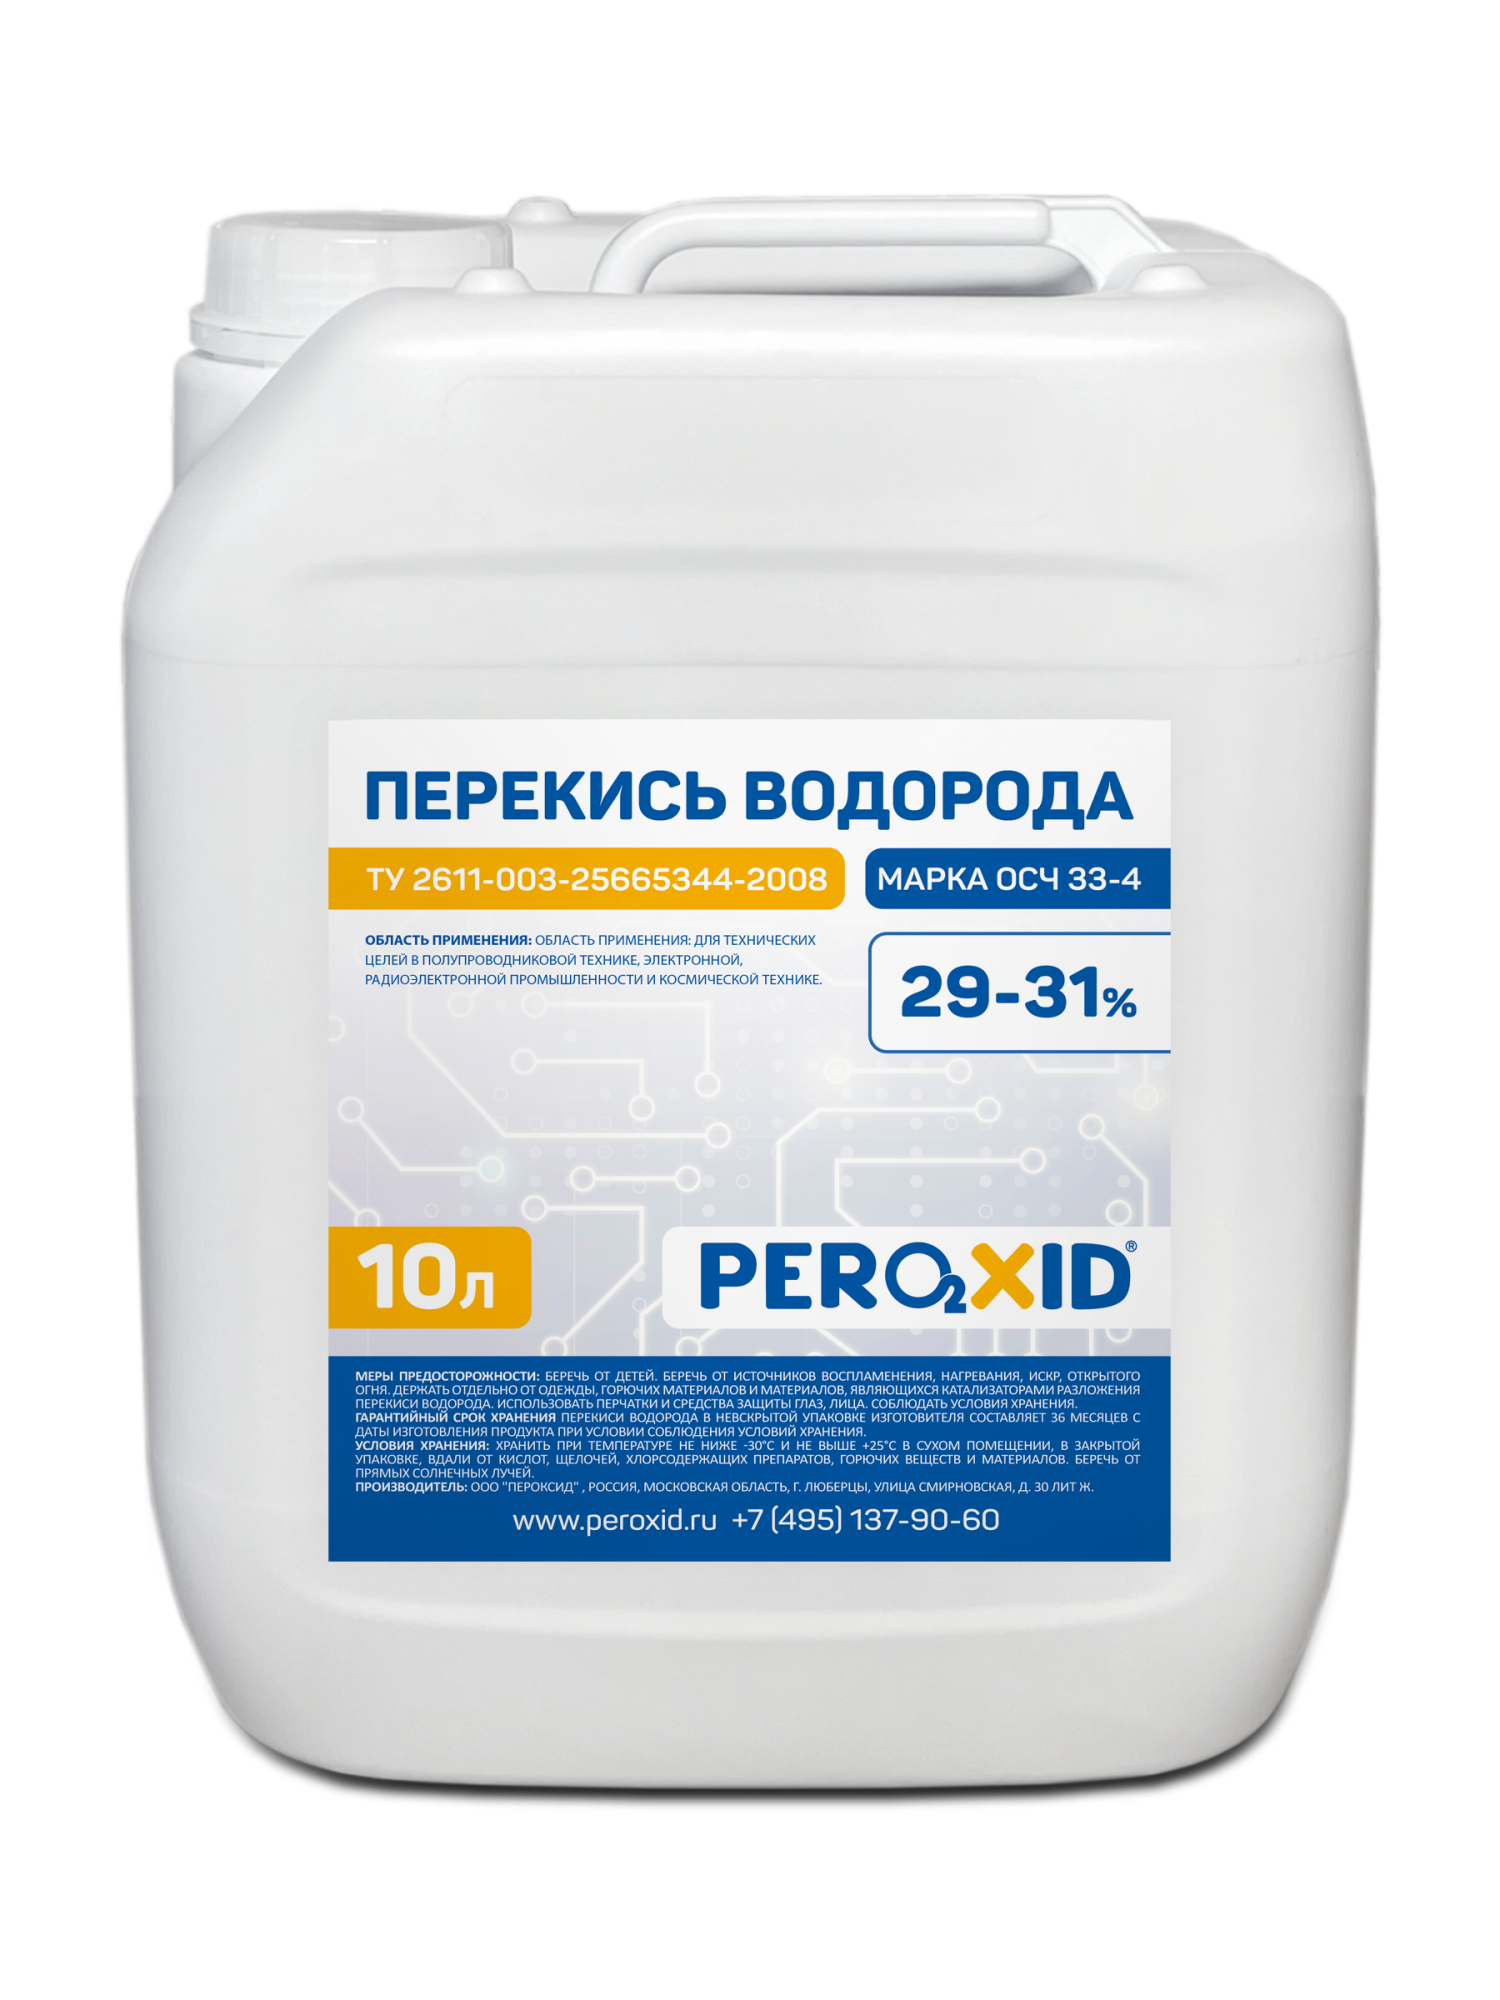 Перекись водорода особой чистоты PEROXID 29-31% марка ОСЧ 33-4 ТУ 2611-003-25665344-2008 10 л/11 кг